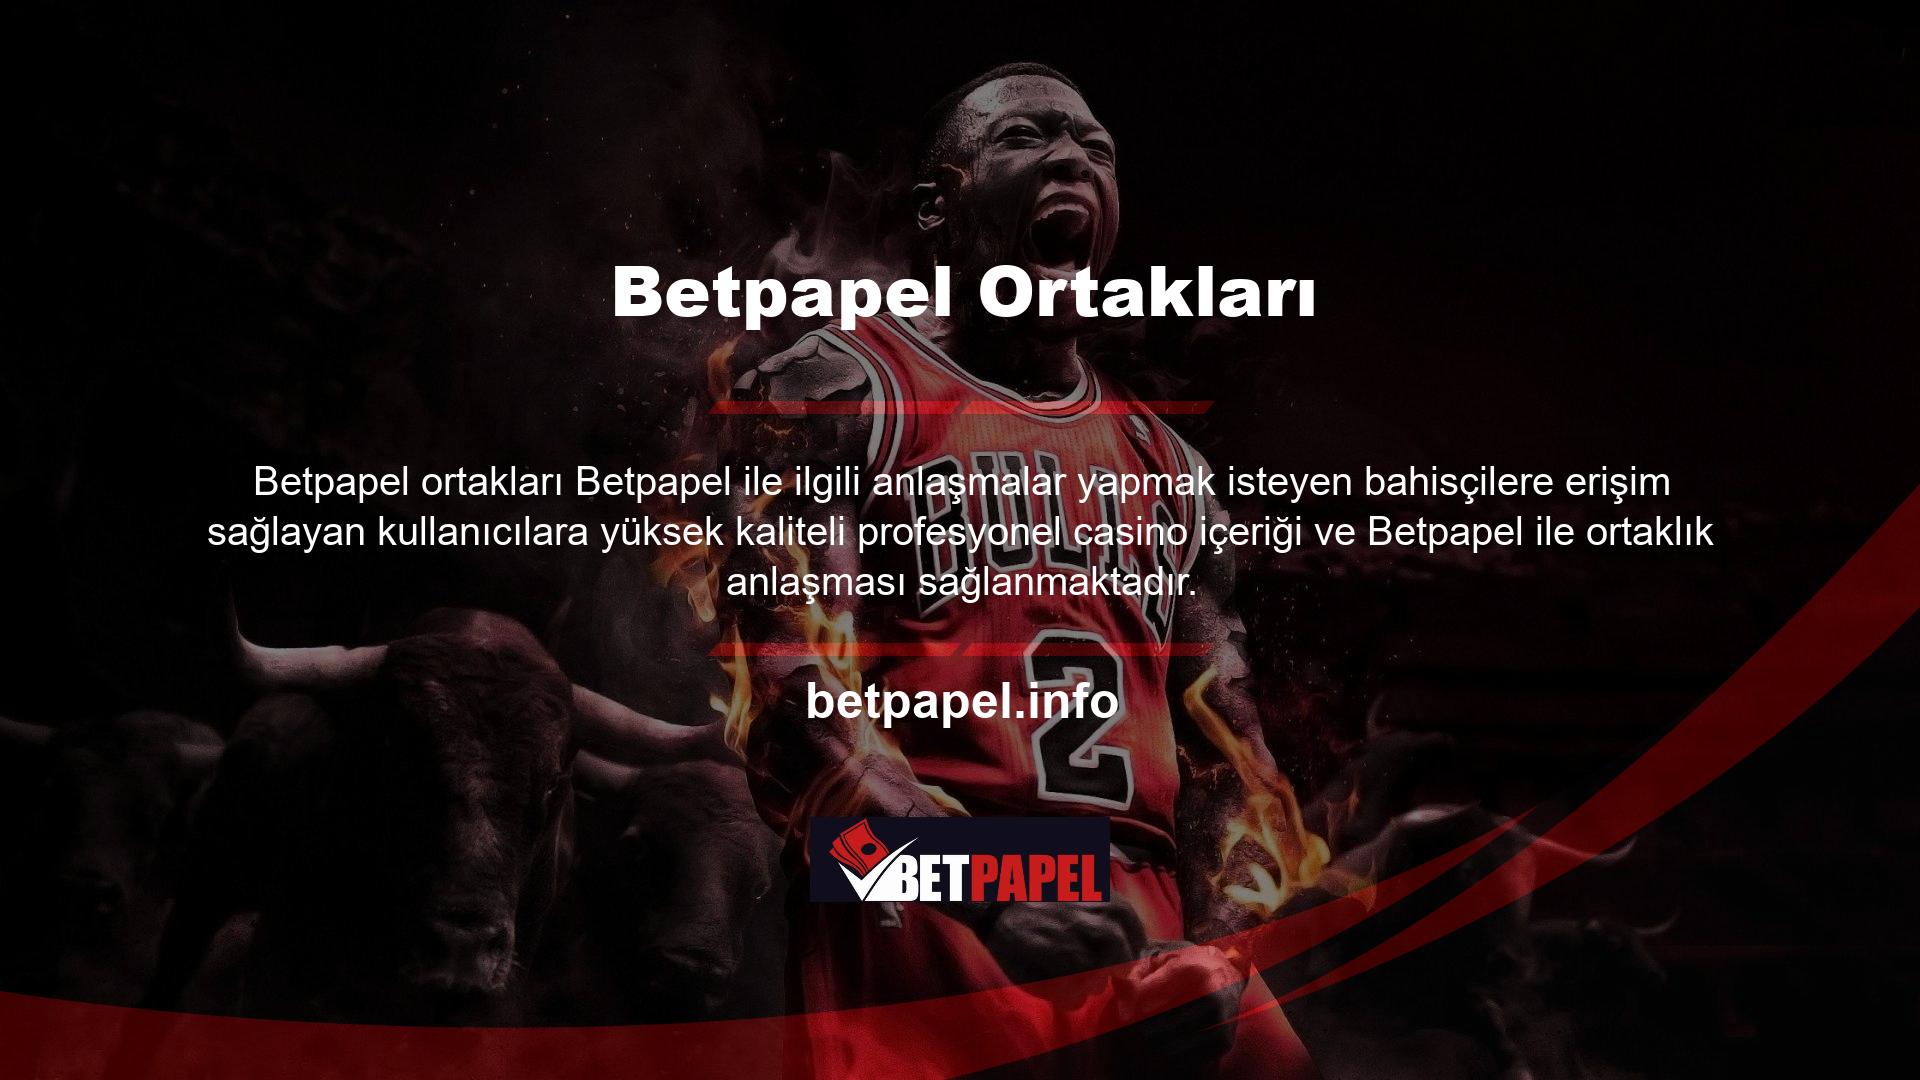 Bu Betpapel ortaklık sitesi, lisanslı bahis operatörleri, canlı bahis, casinolar ve casino siteleriyle ortaklık anlaşmaları yapmak isteyenlere yöneliktir